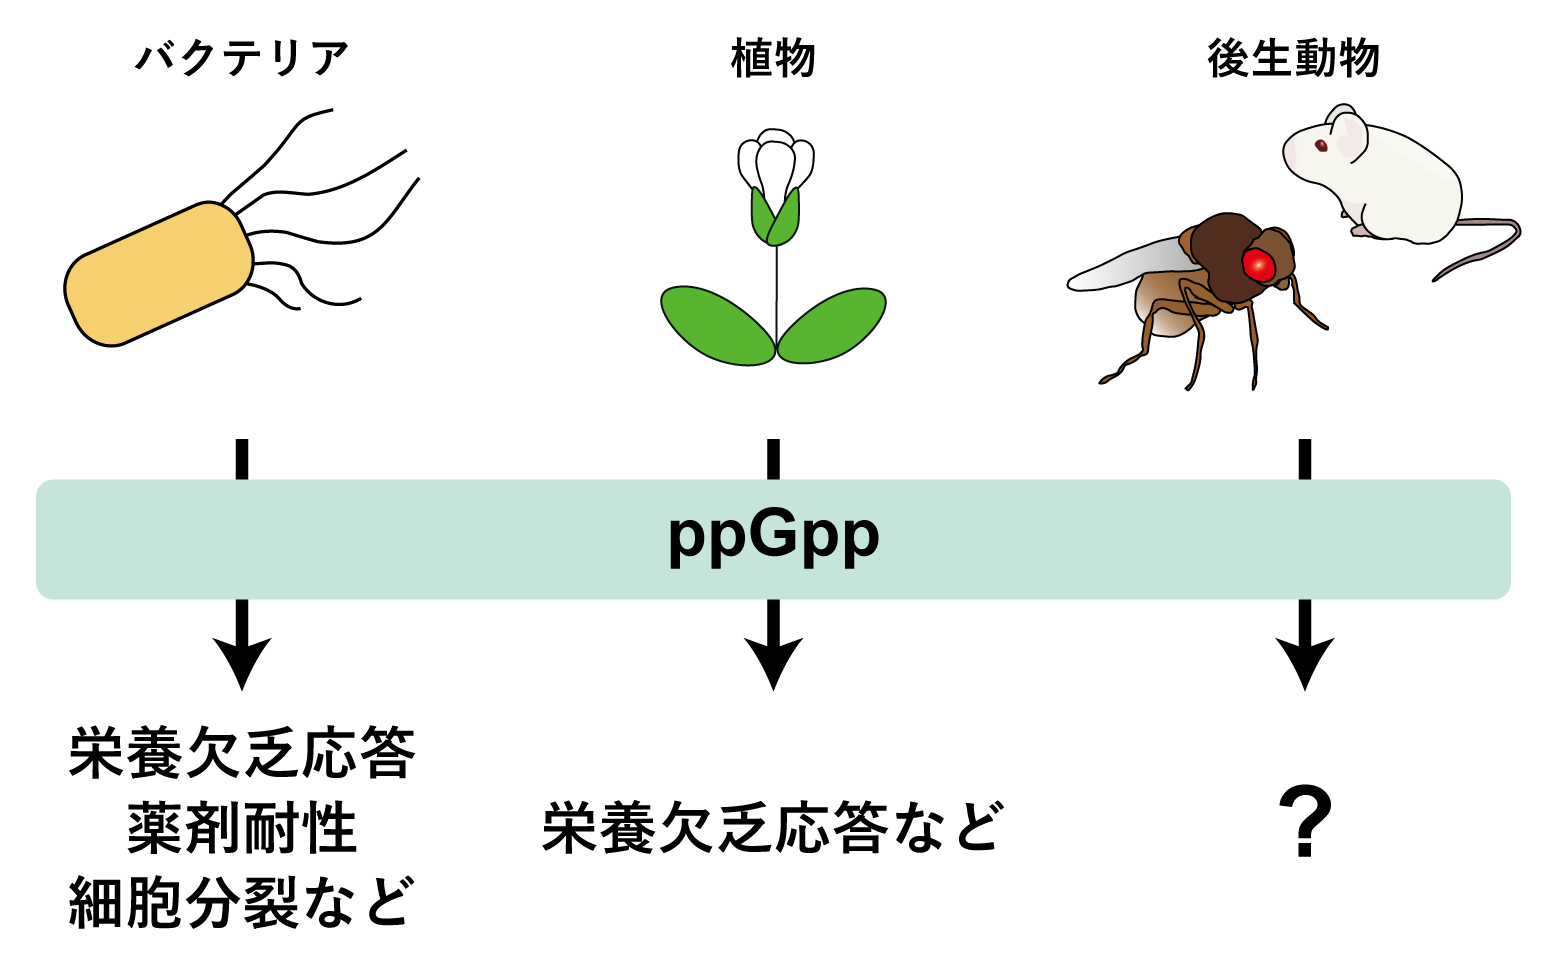 図1 各生物におけるppGppの機能
ppGppは、細菌では種々の応答に関与することが知られ、植物でもその機能が解明されつつある。しかし、後生動物では内生ppGppが検出された例がほとんどなかったため、その機能は一切明らかになっていなかった。
の画像